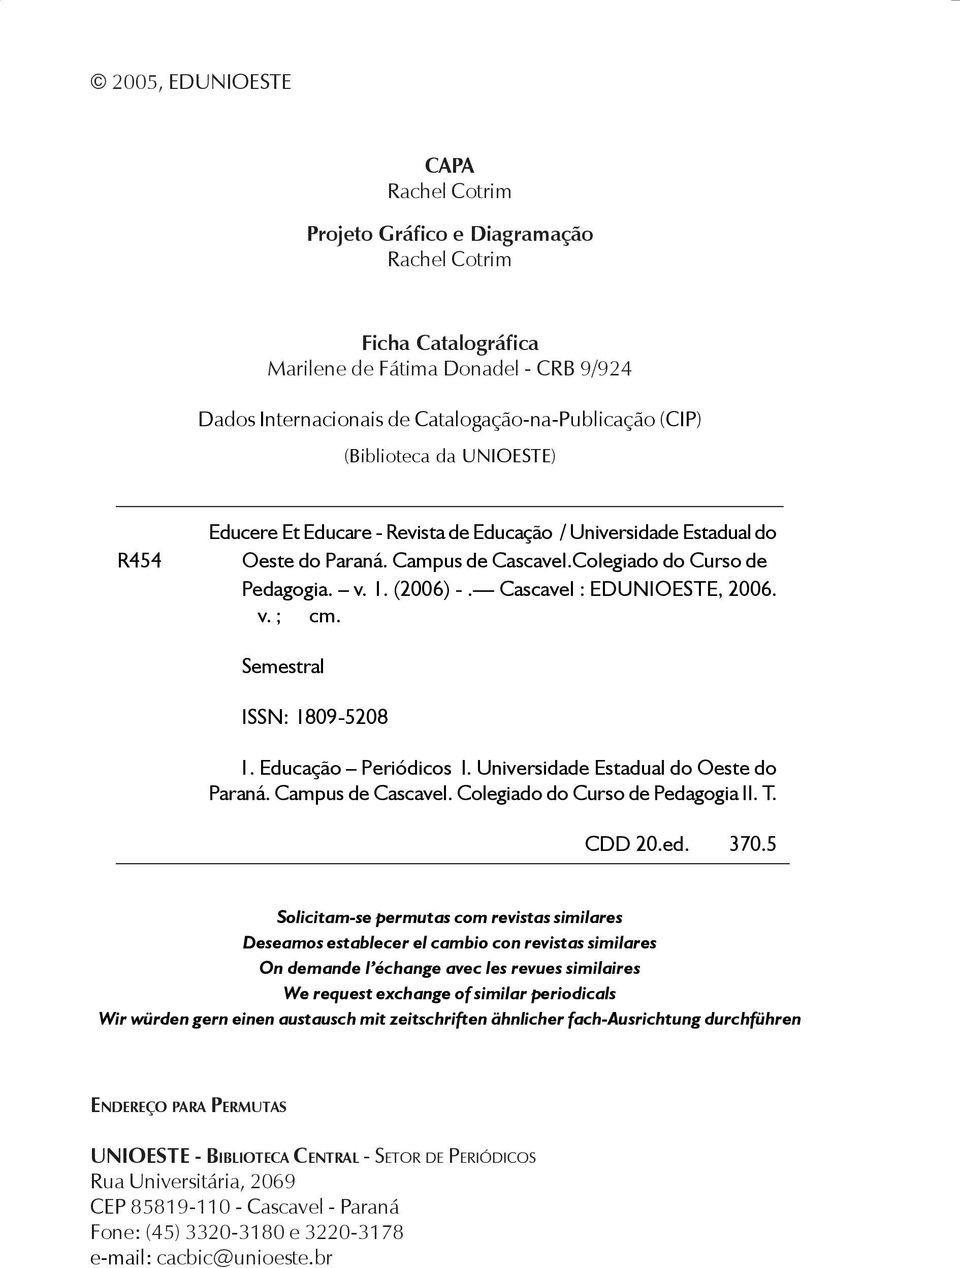 Semestral ISSN: 1809-5208 1. Educação Periódicos I. Universidade Estadual do Oeste do Paraná. Campus de Cascavel. Colegiado do Curso de Pedagogia II. T. CDD 20.ed. 370.